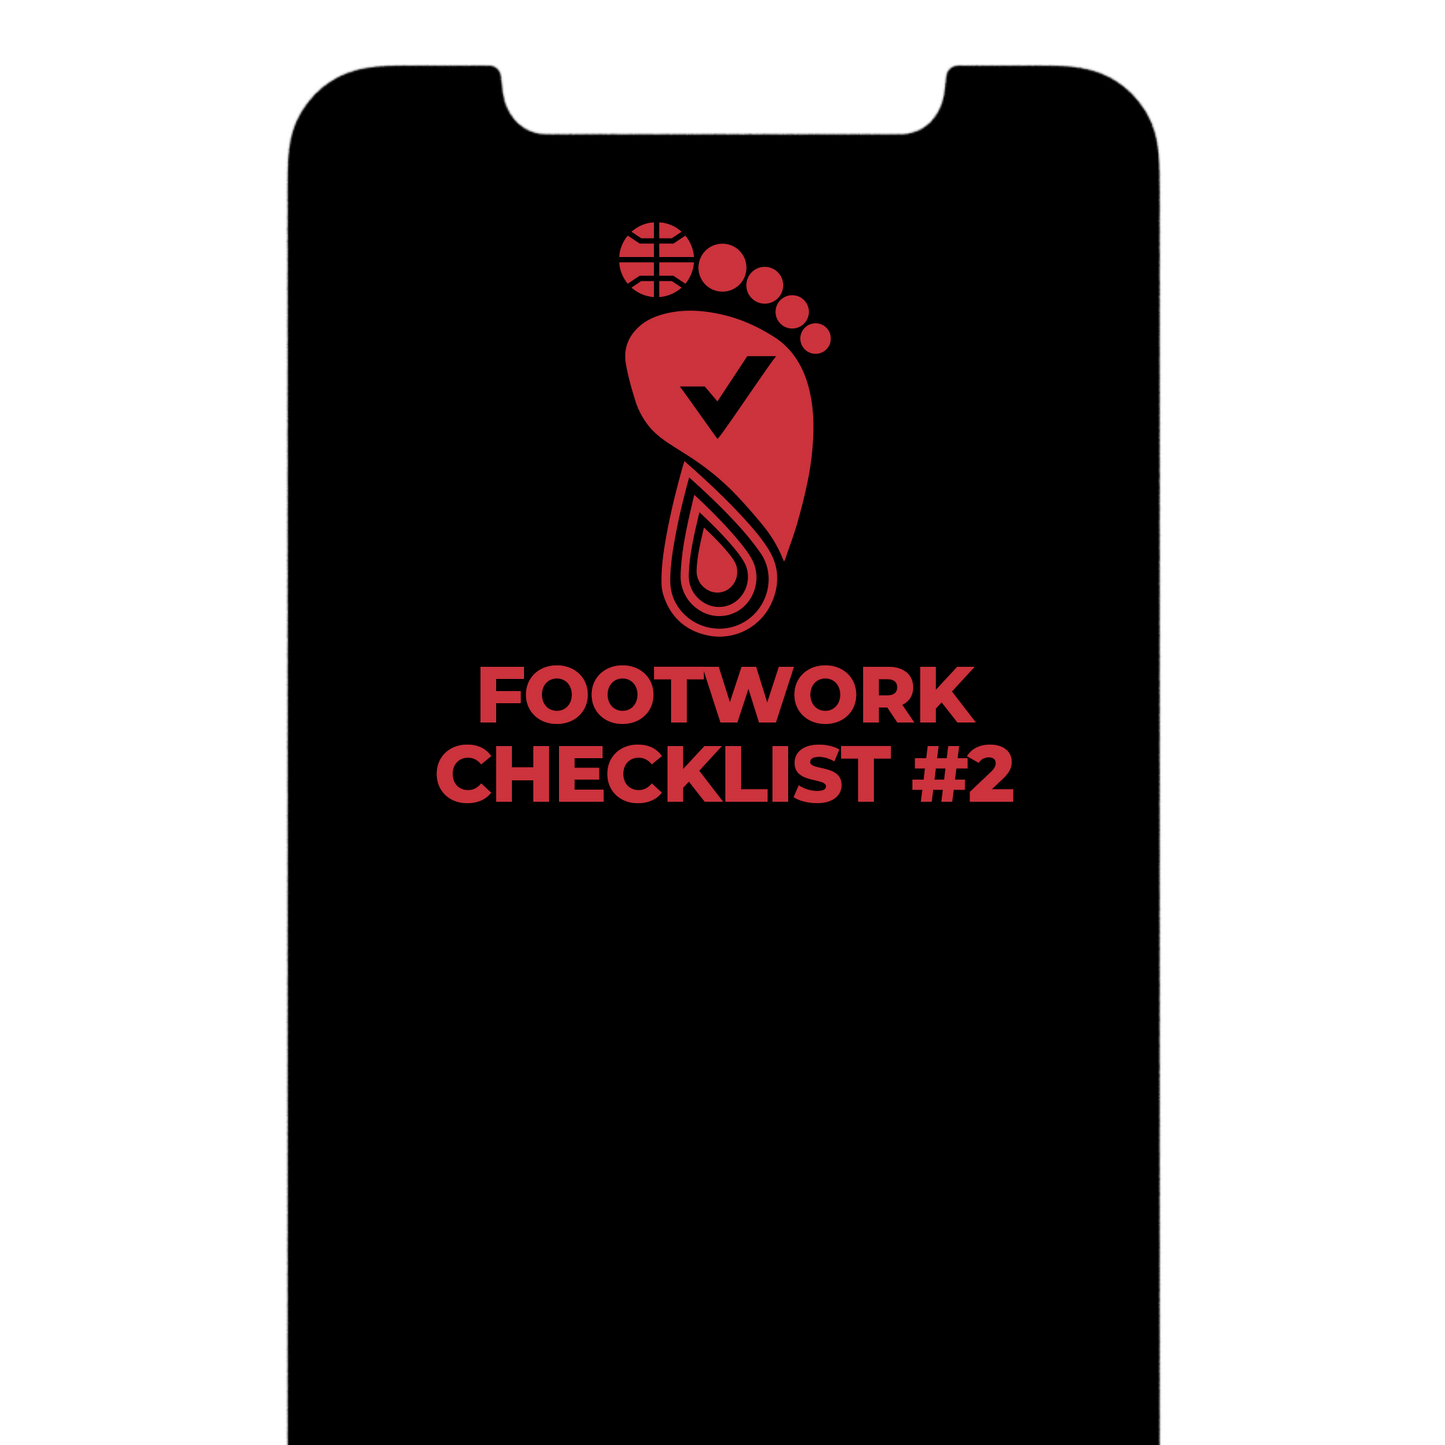 Footwork Checklist #2